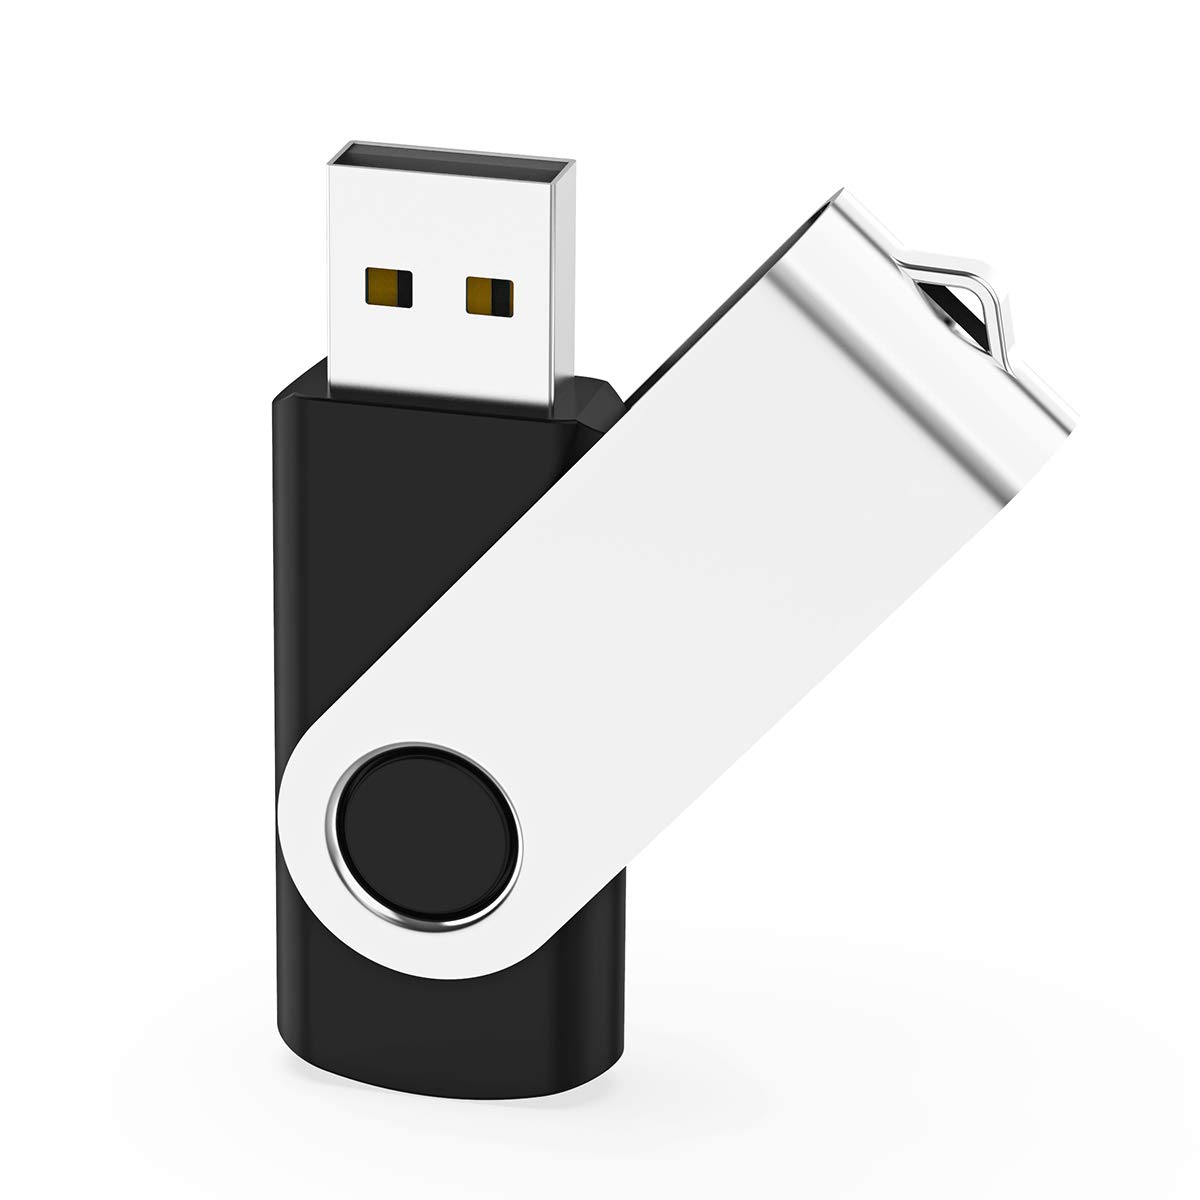 KEXIN USBメモリ 32GB USB2.0 USBメモリー